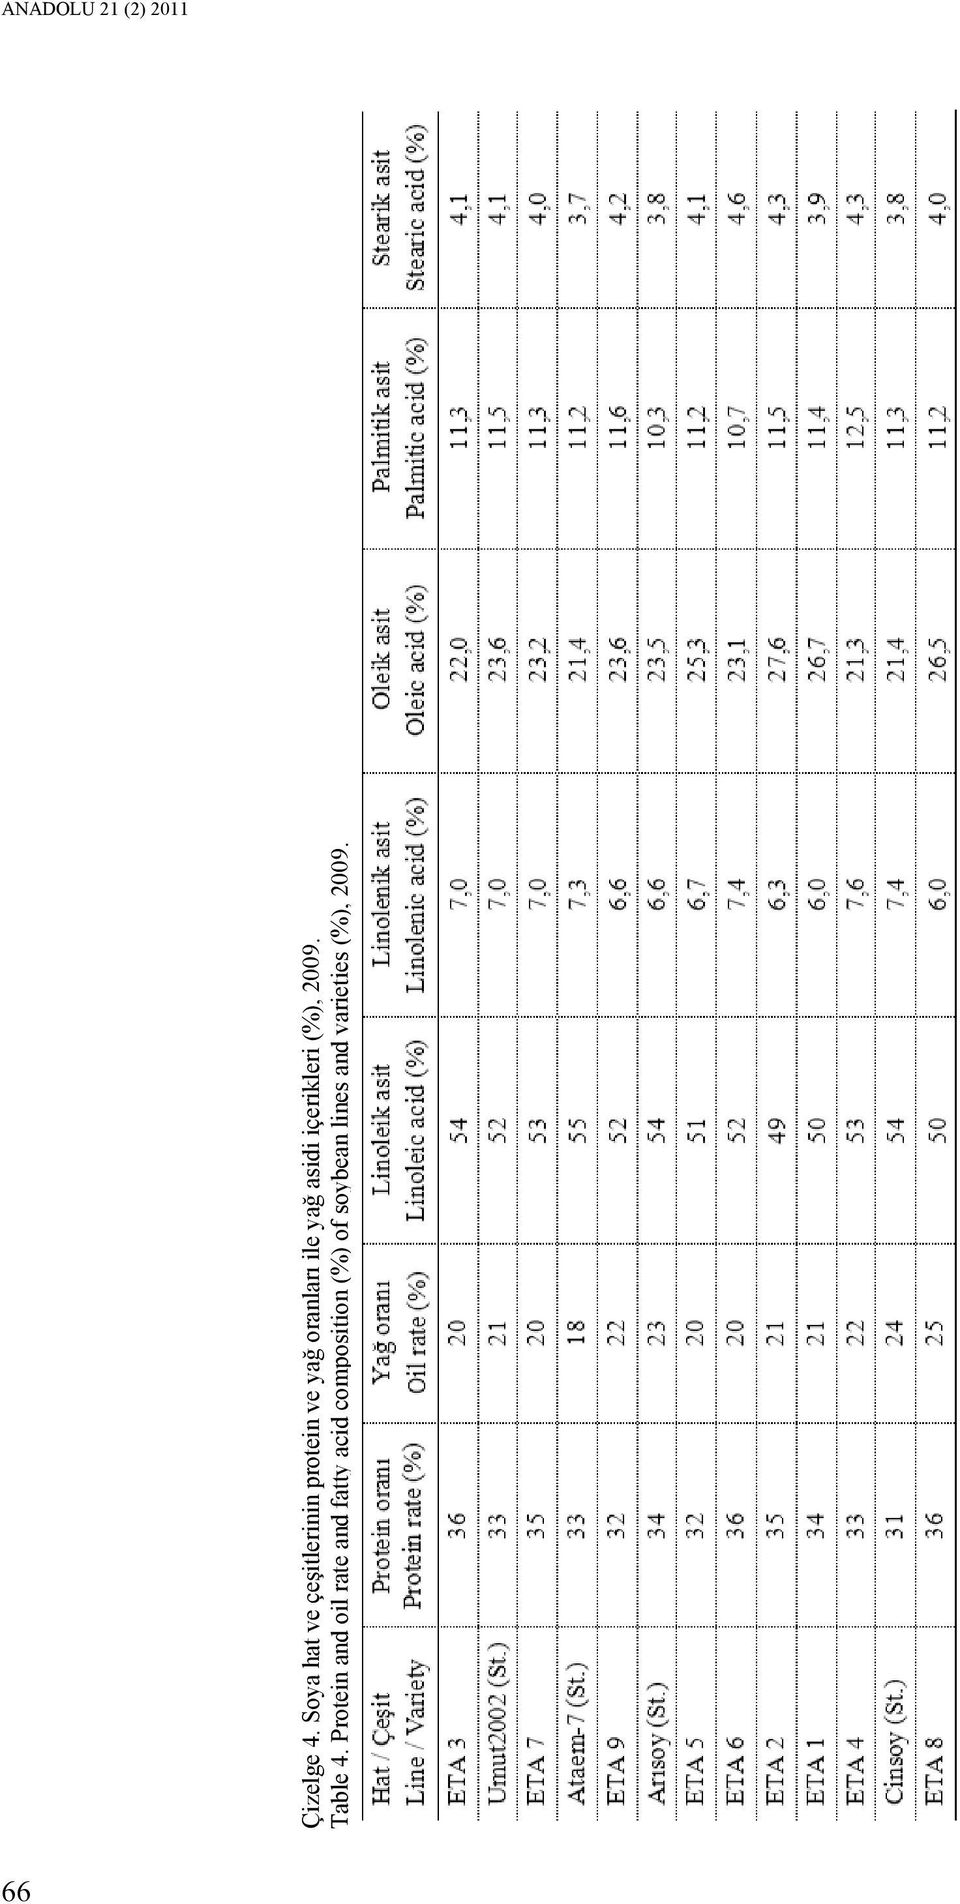 yağ asidi içerikleri (%), 2009. Table 4.